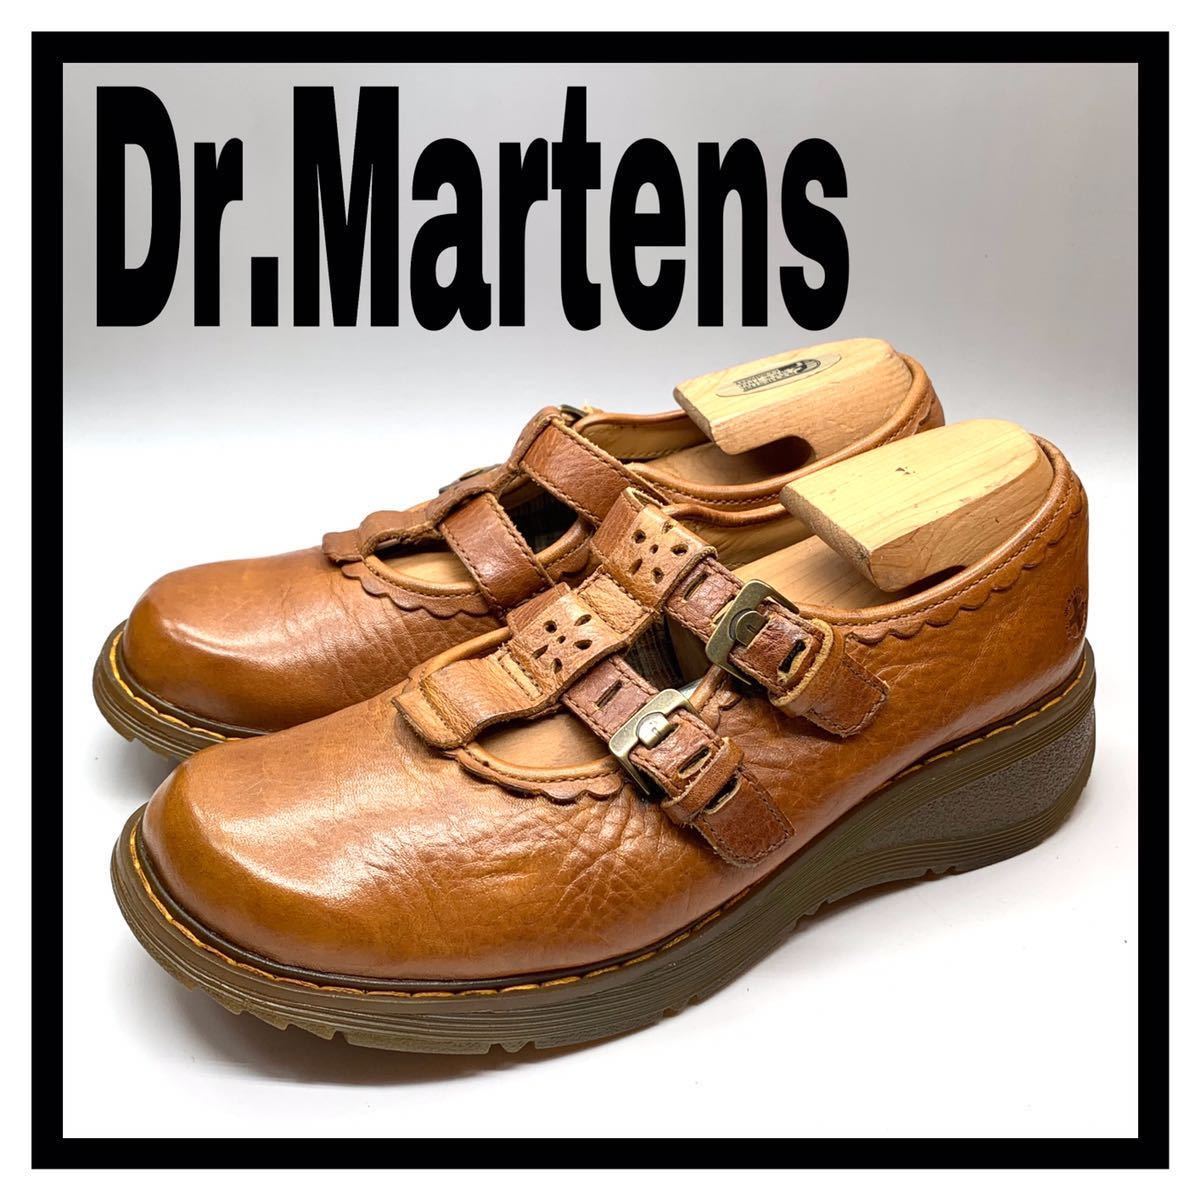 Dr.Martens (ドクターマーチン) メリージェーン ストラップシューズ レザー キャメル ブラウン UK7 41 26cm 革靴 レザーシューズ メンズ